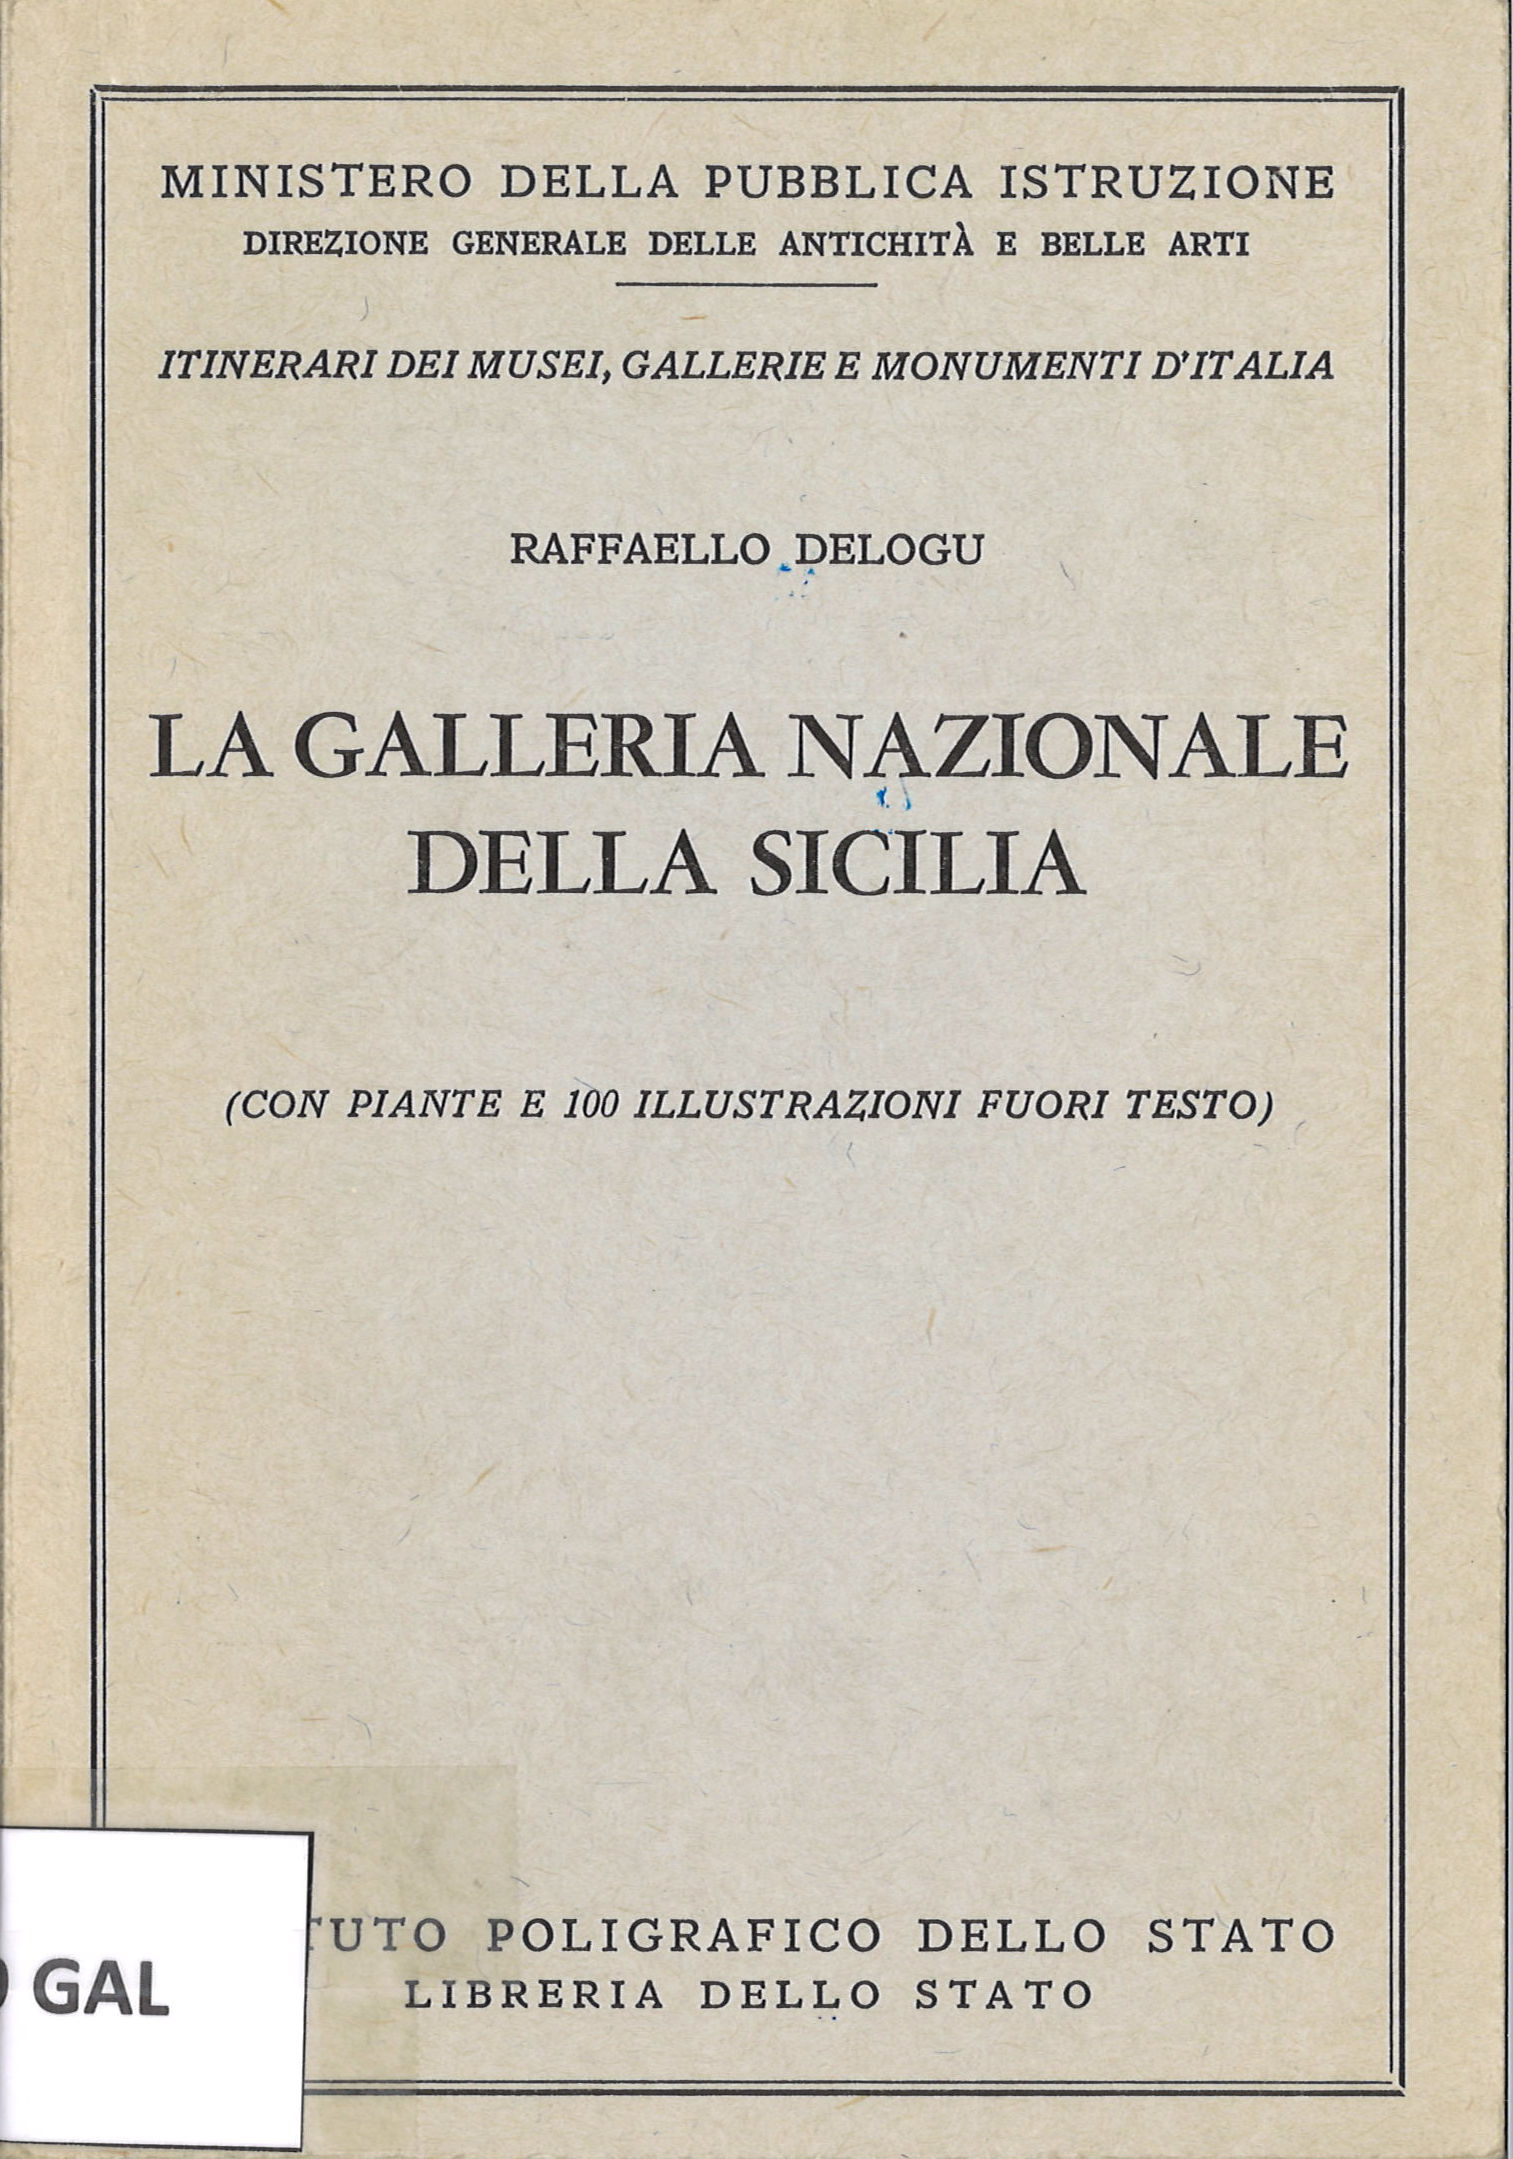 La Galleria Nazionale della Sicilia. Raffaello Delogu-image